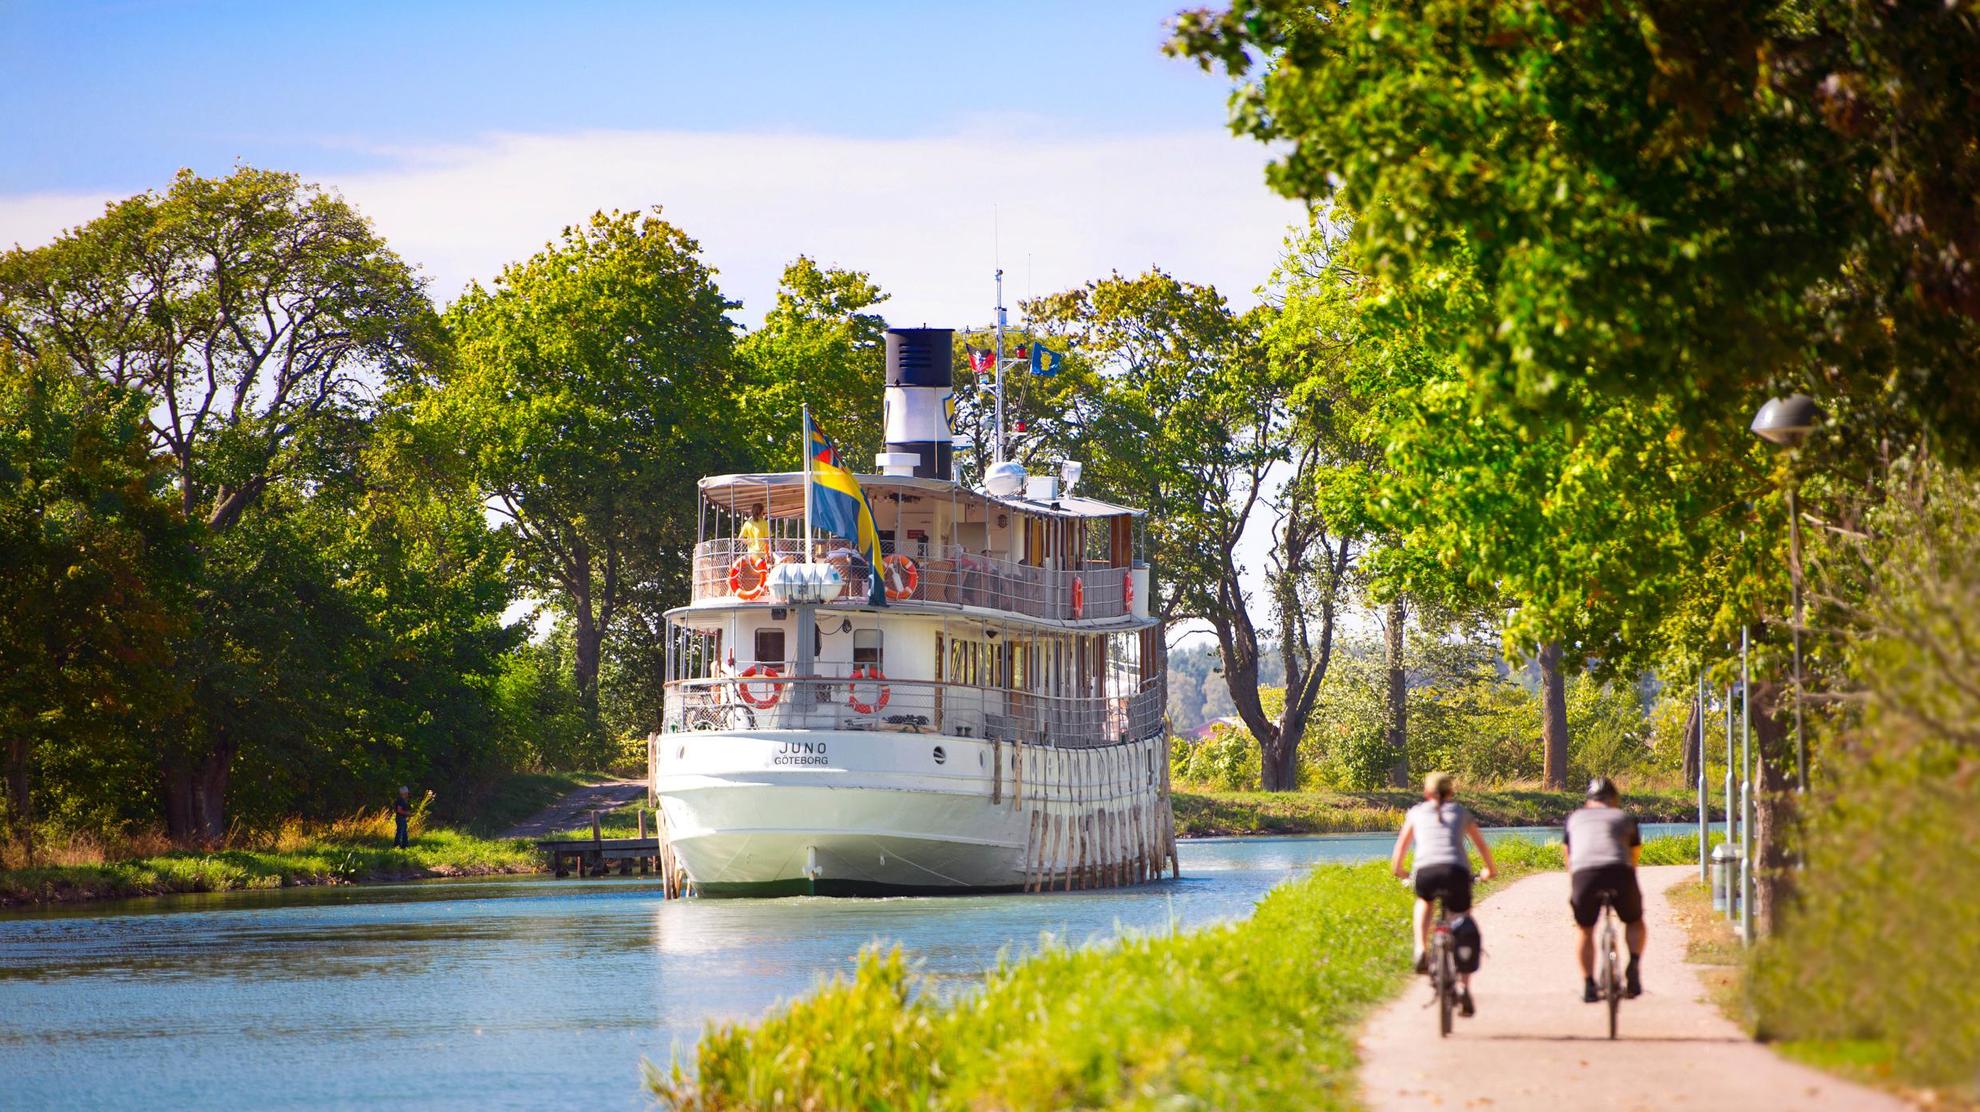 C'est l'été, deux personnes font du vélo au bord de l'eau du canal Göta. Un bateau navigue le long du canal.